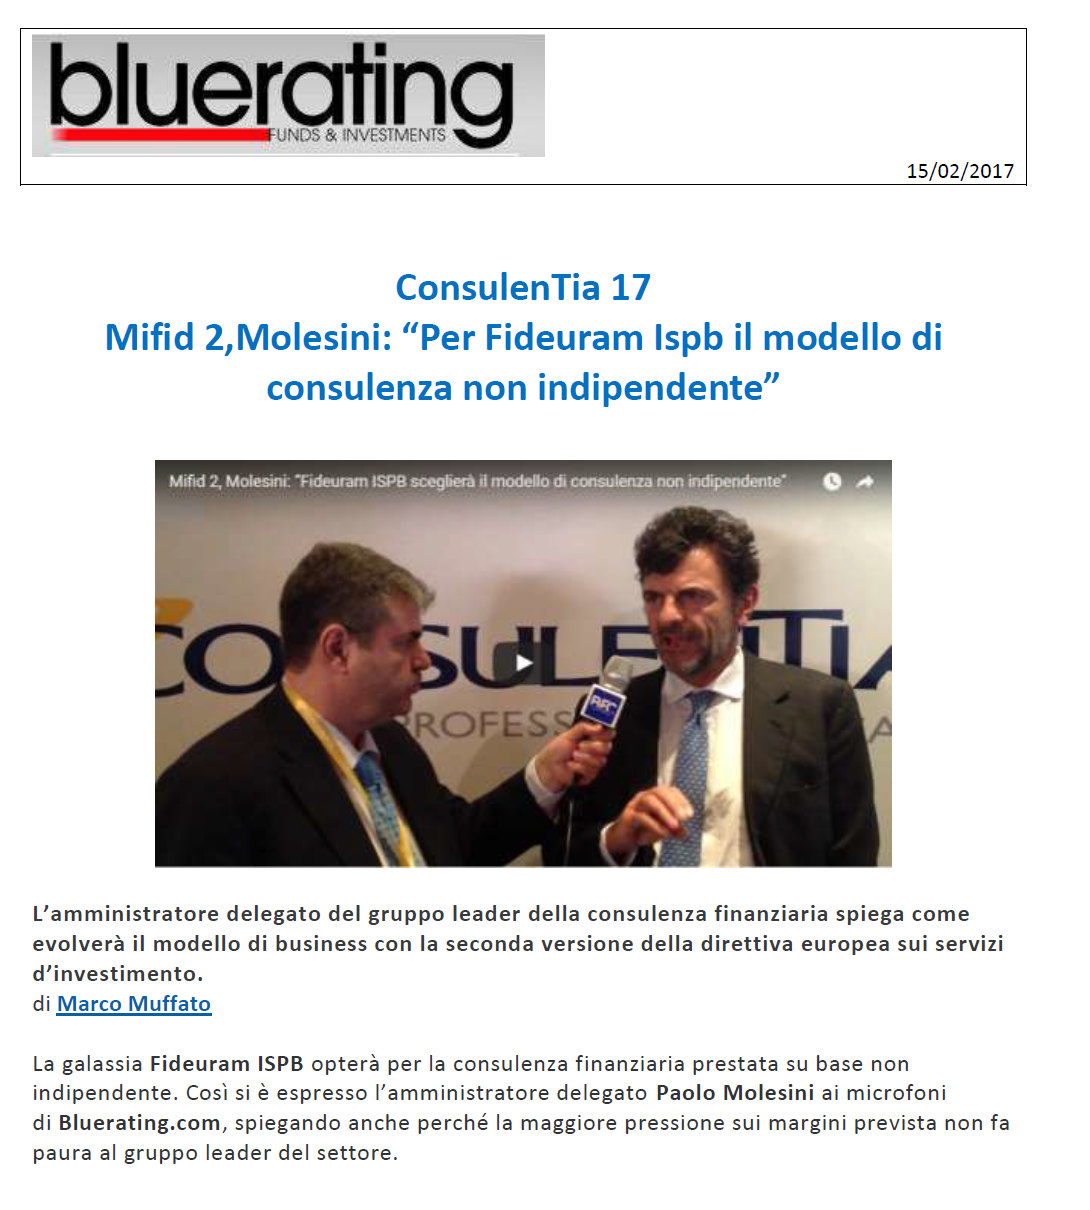 ConsulenTia17, Mifid 2 “Per Fideuram Ispb il modello di consulenza non indipendente”